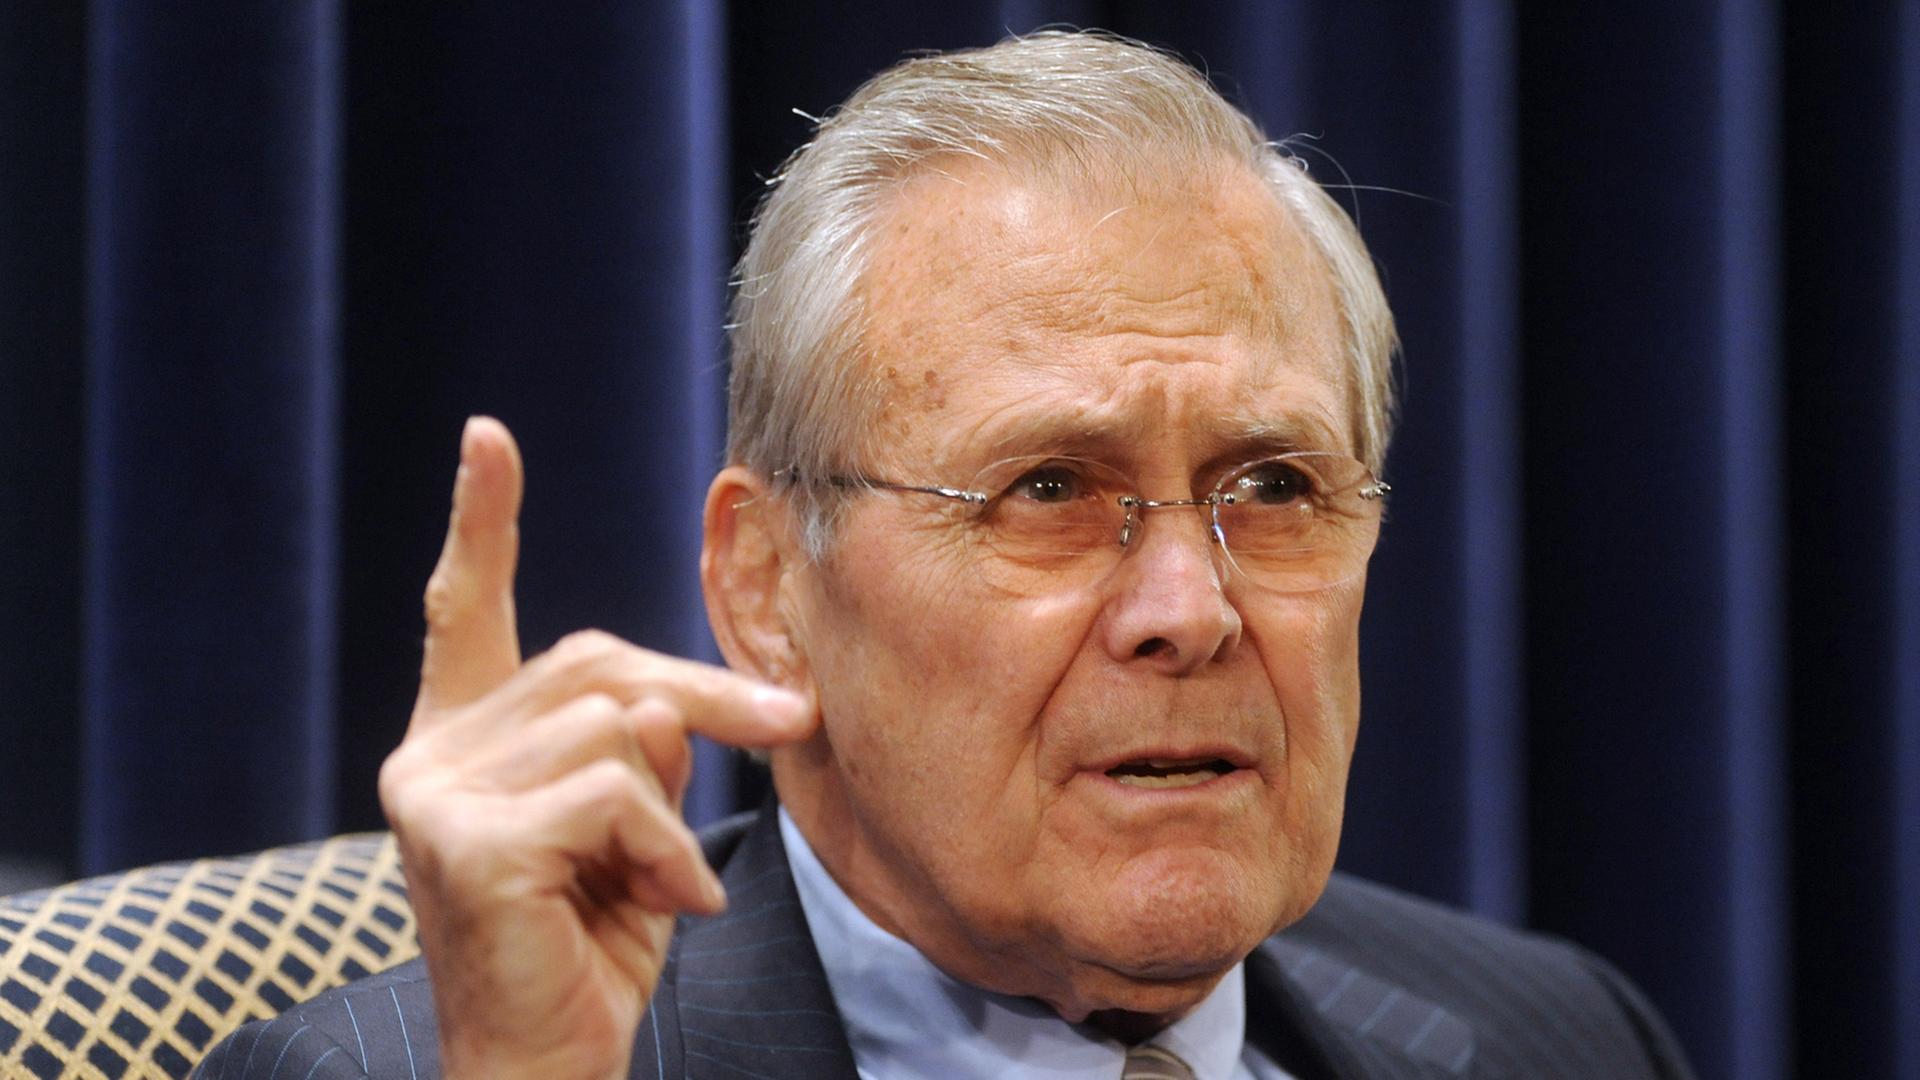 Der ehemalige US-Verteidigungsminister Donald Rumsfeld bei der Vorstellung seiner Memoiren in Washington DC am 22.02.2011.